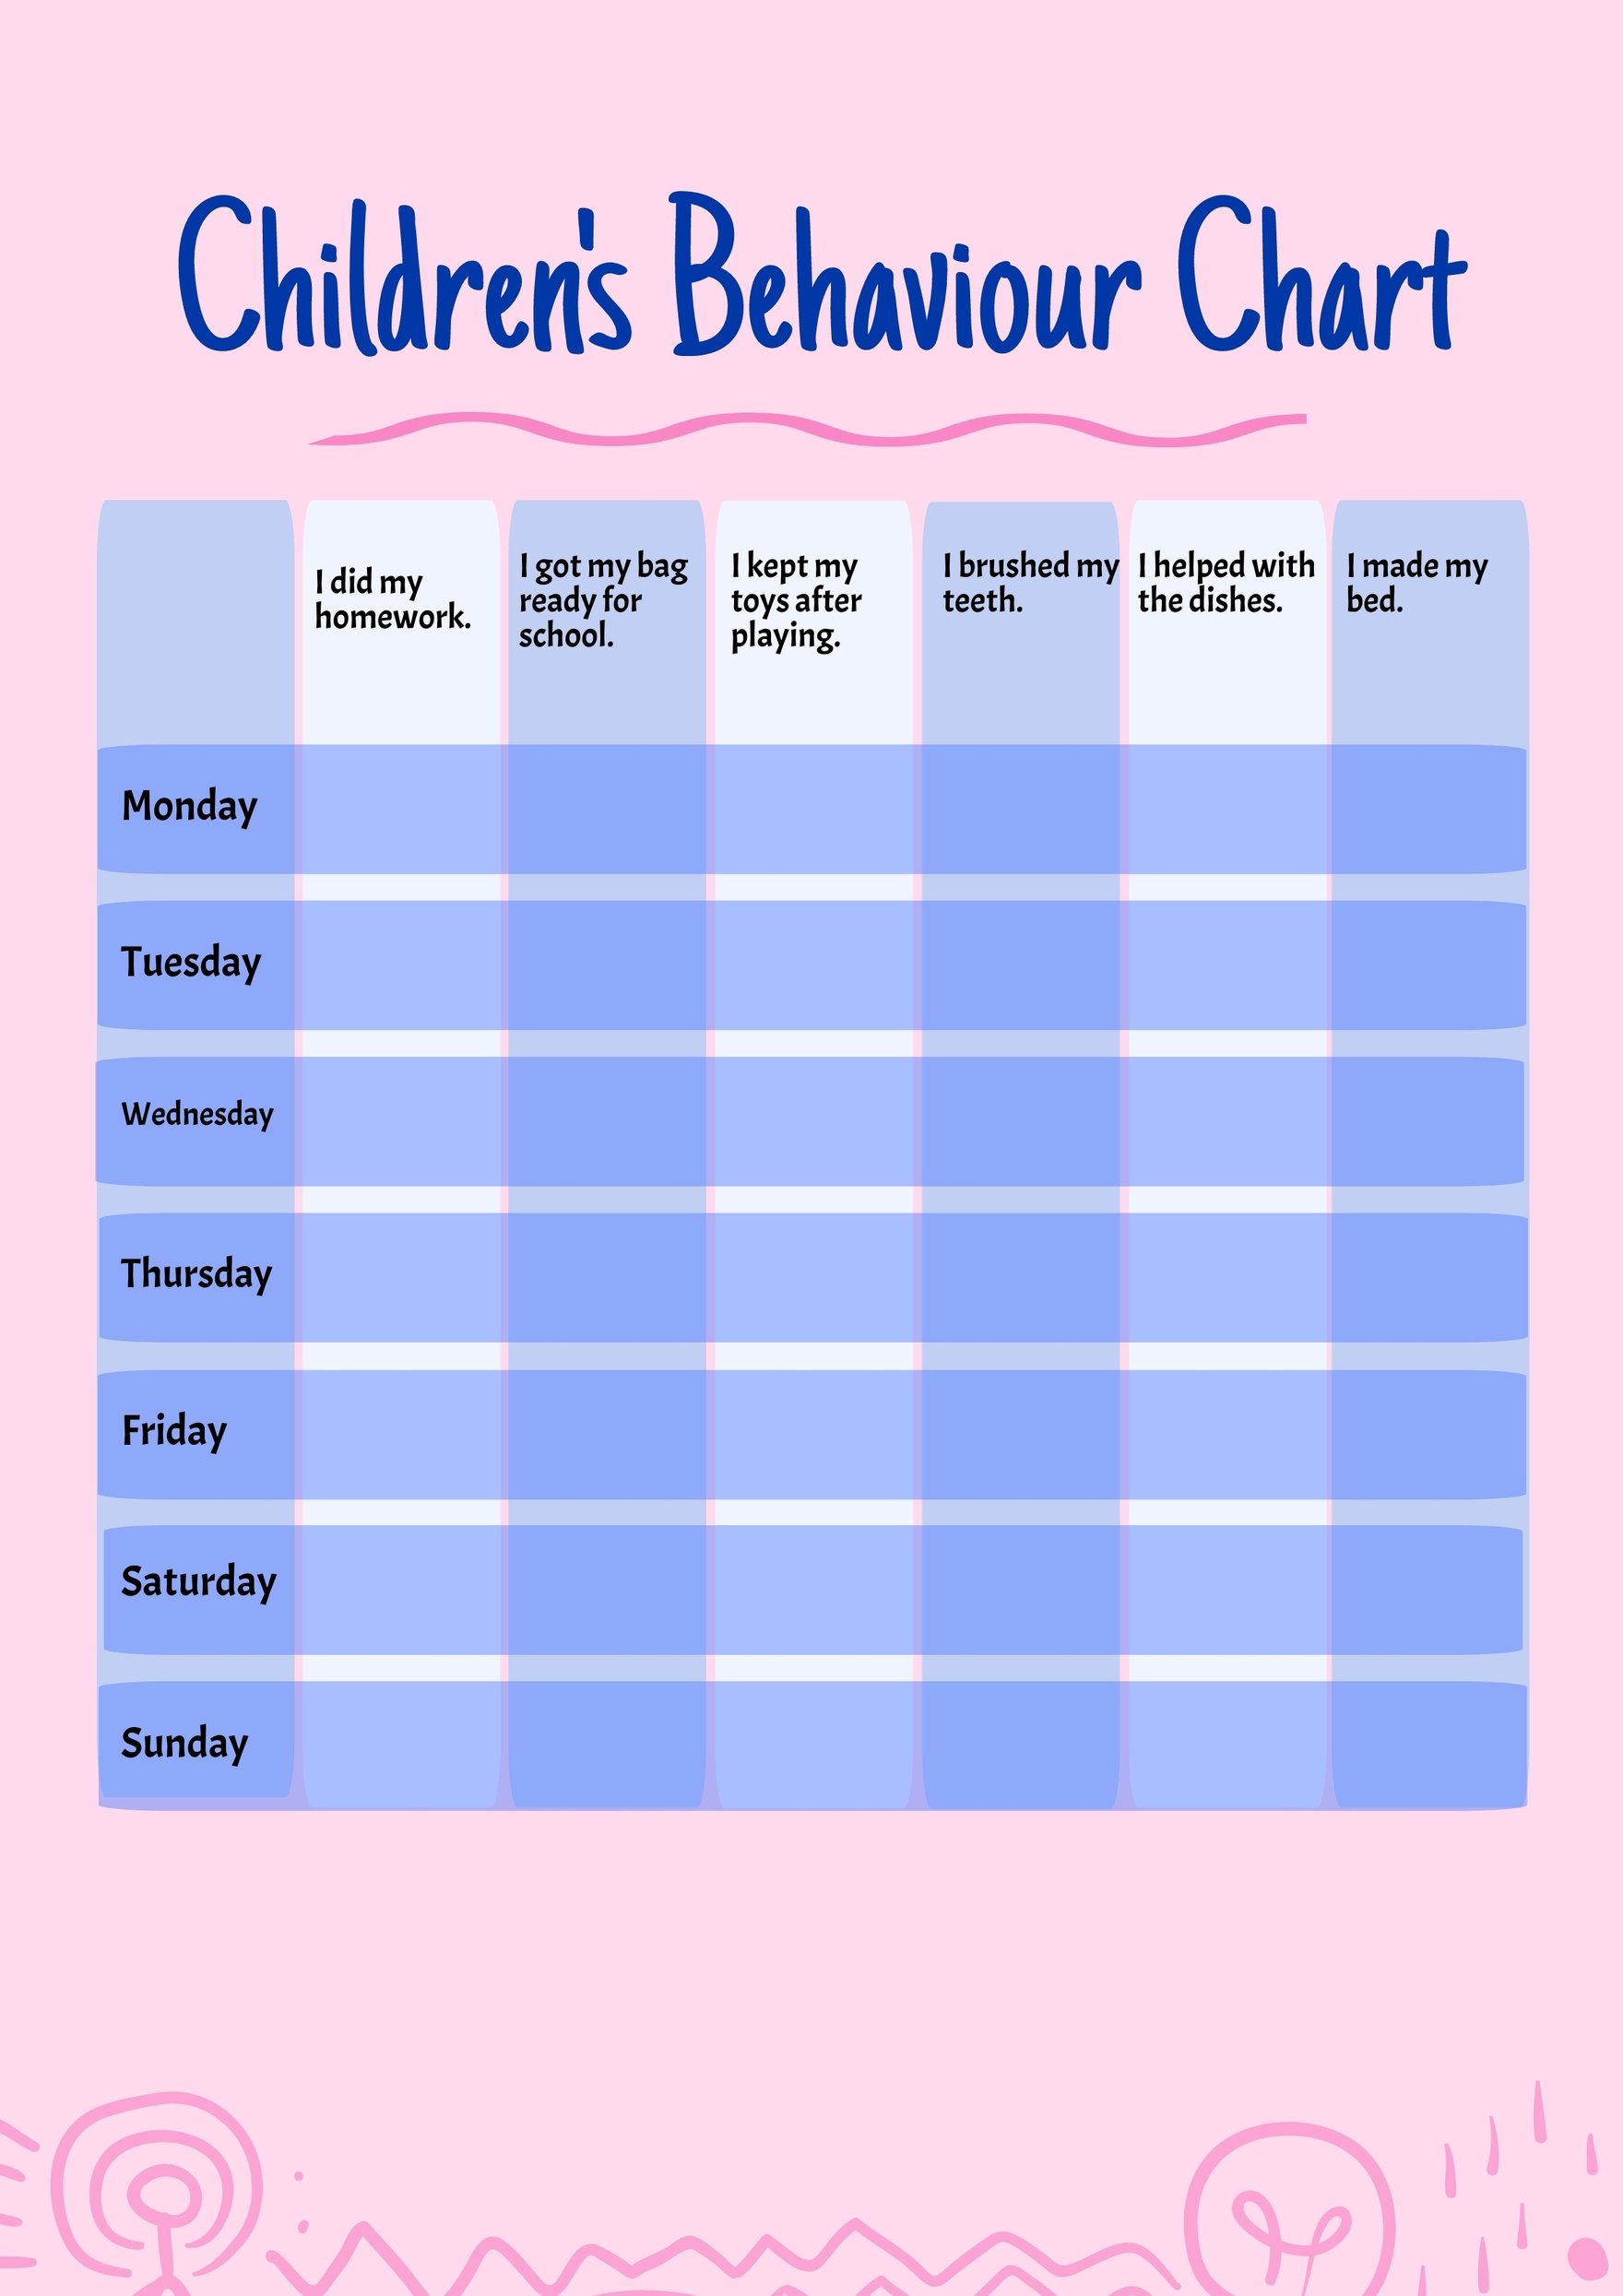 Children's Behaviour Chart in PDF, Illustrator